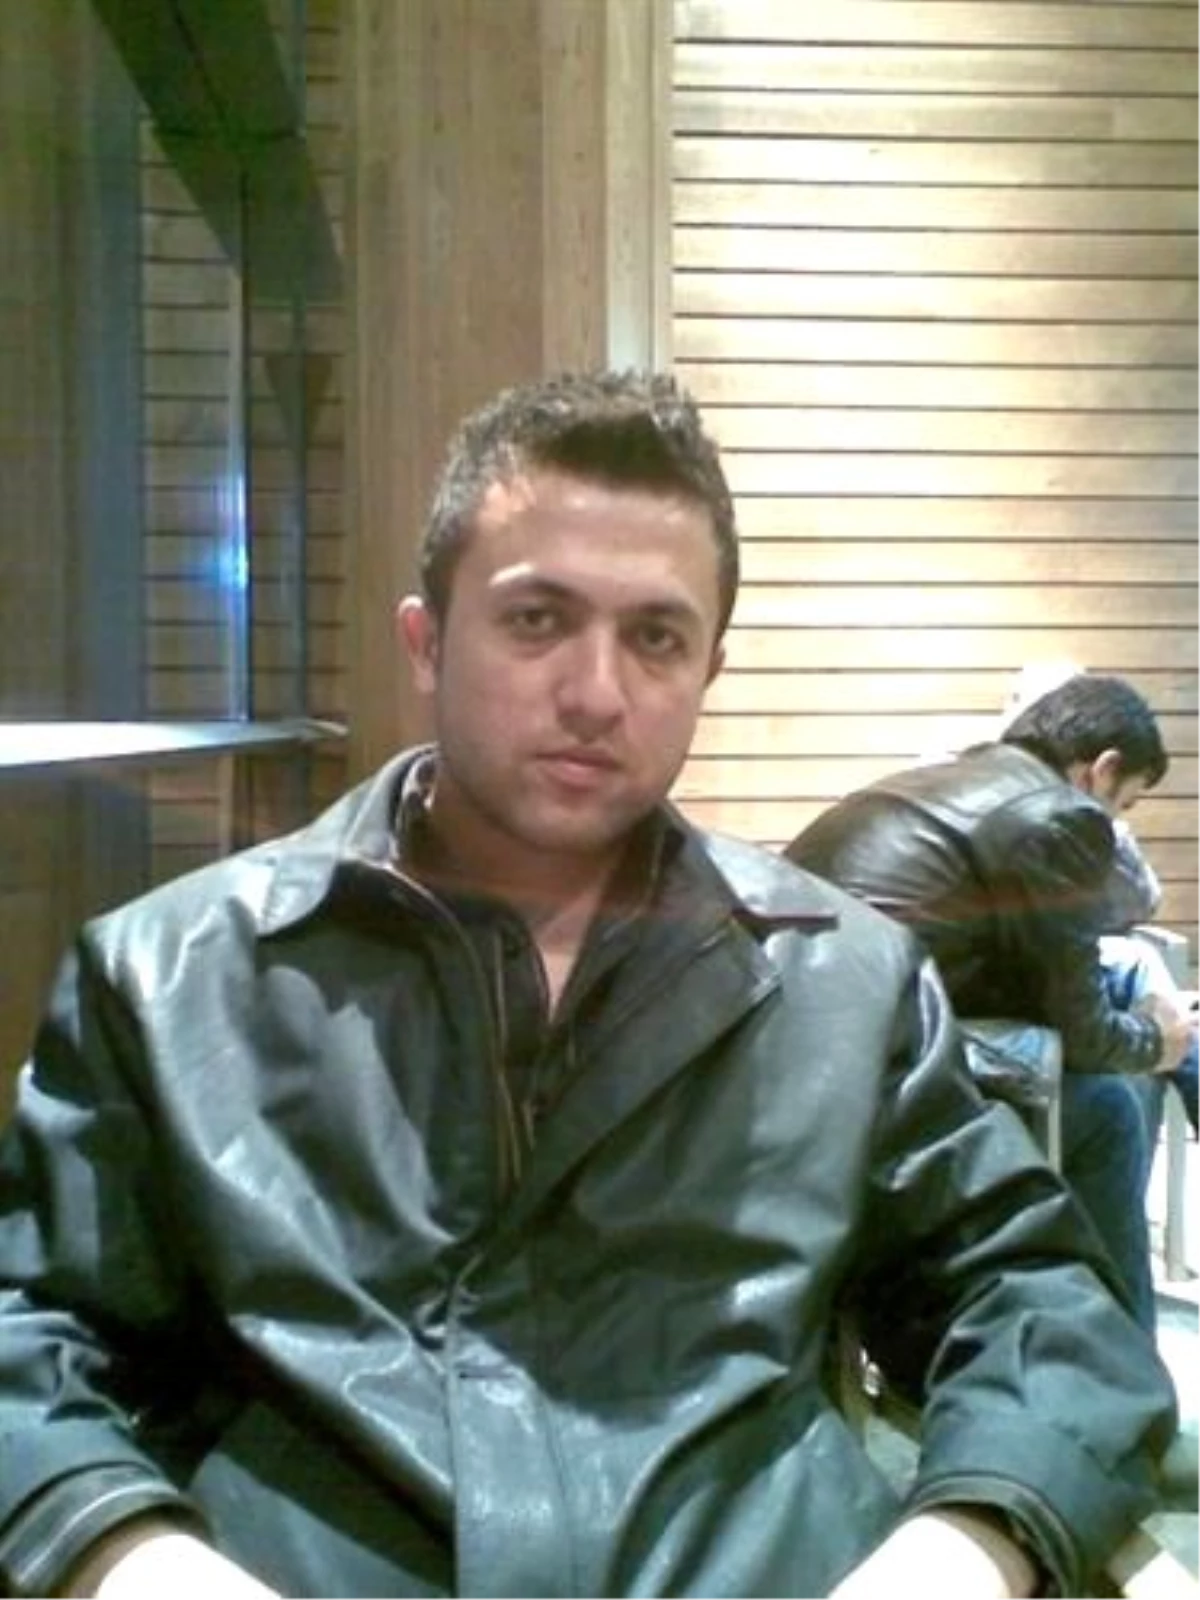 Atama Bekleyen Öğretmen Trafik Kazasında Öldü